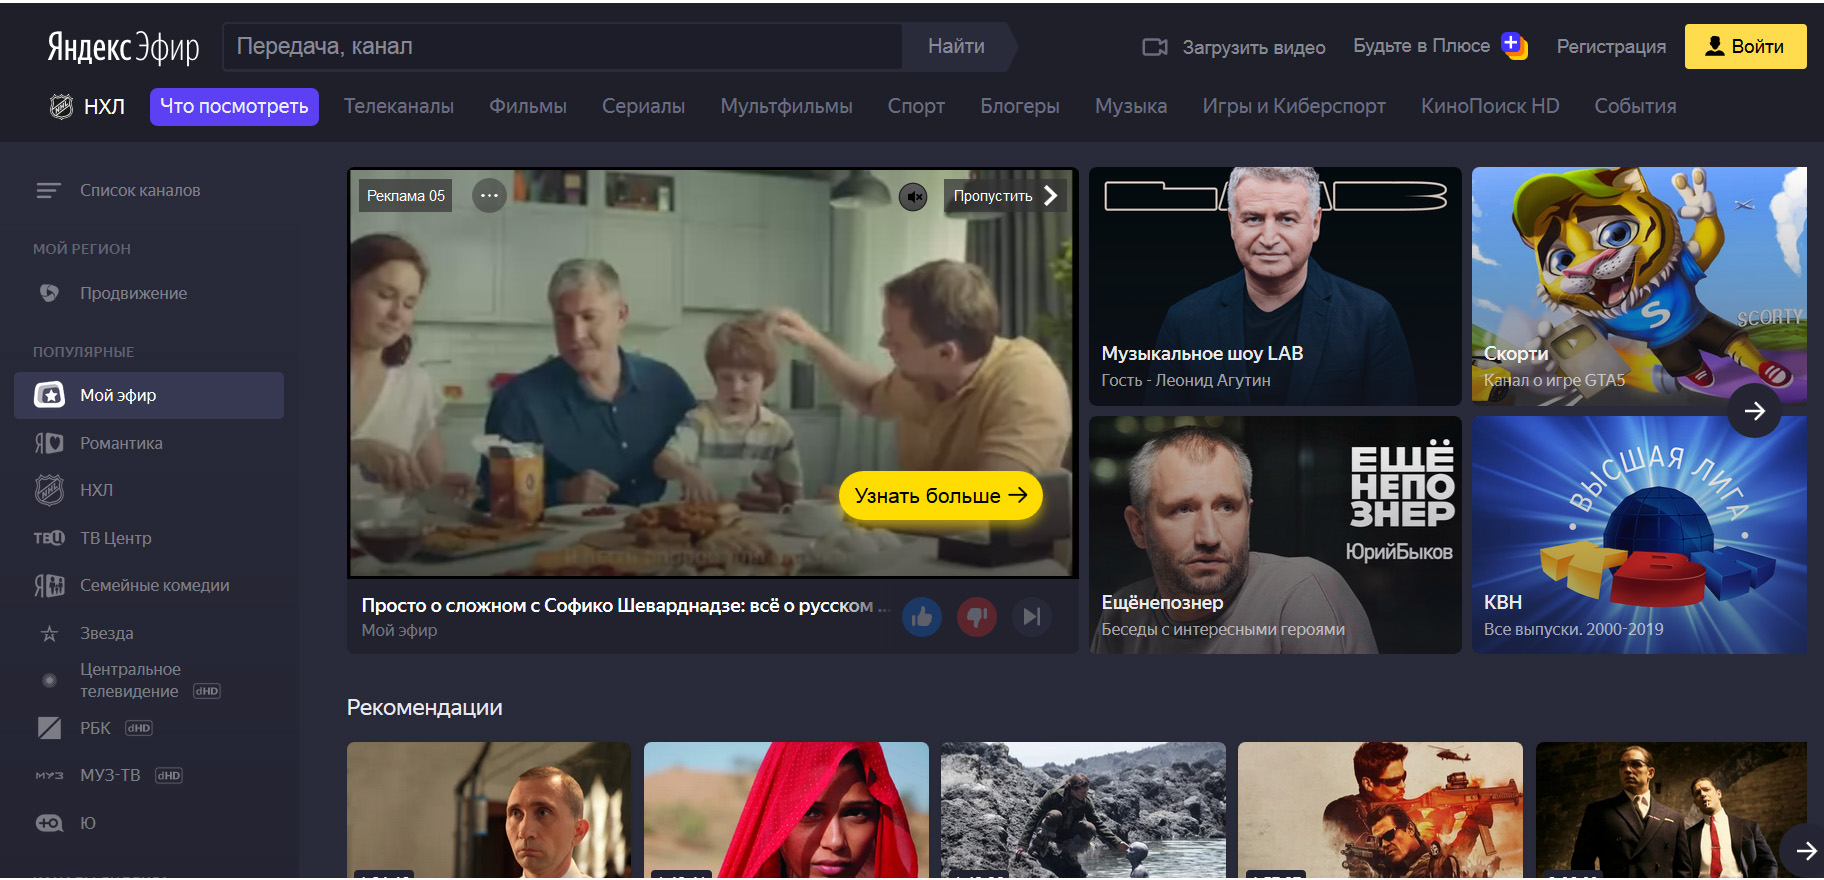 Яндекс.Эфир открыл платформу для размещения профессионального видеоконтента